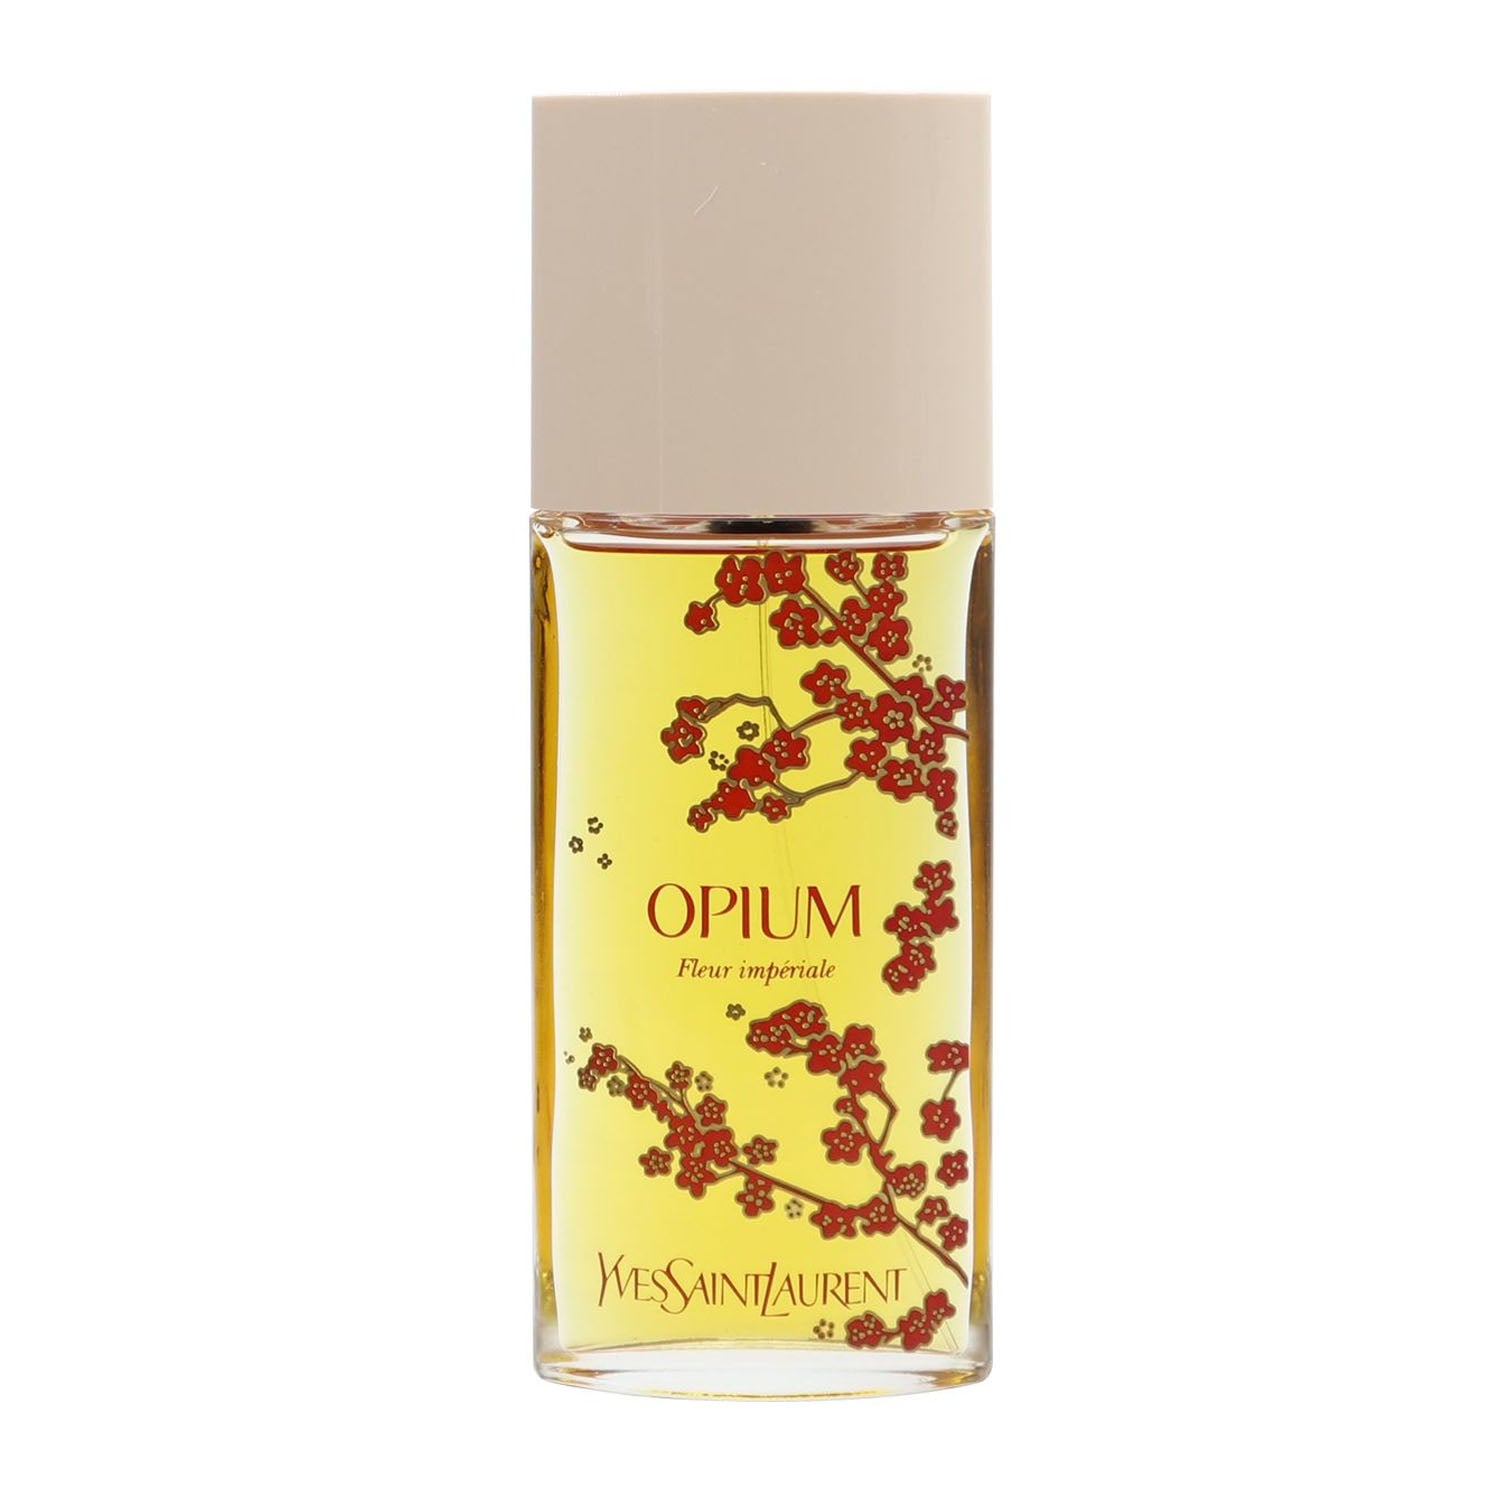 Yves Saint Laurent Opium Fleur Imperiale 100 ml Eau De Toilette Spray for Women